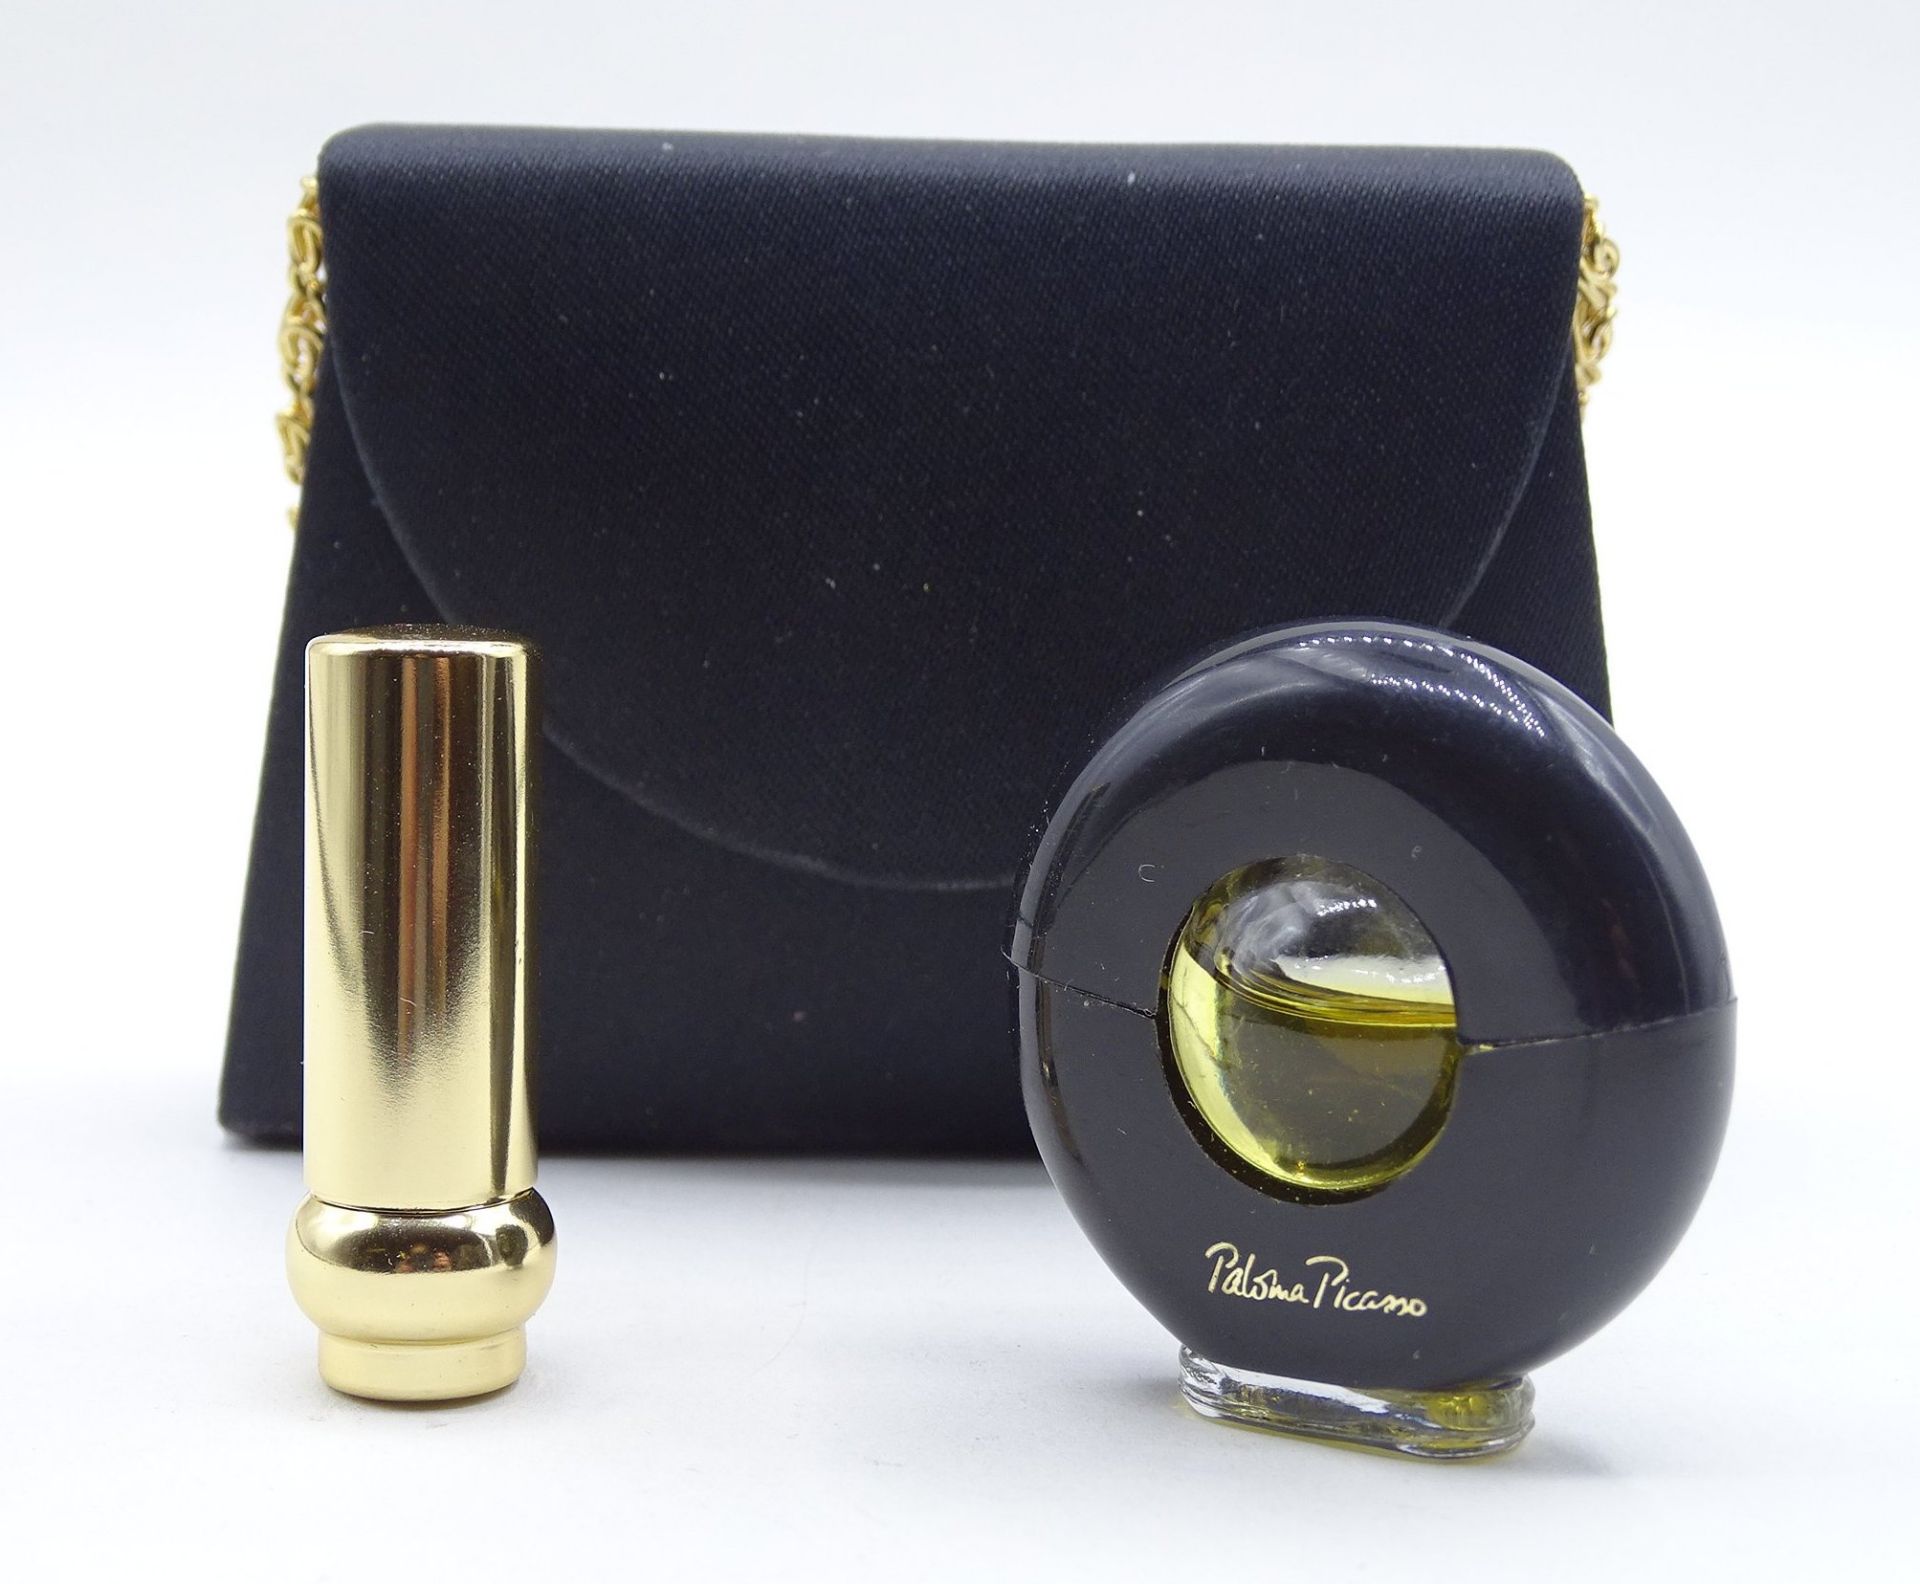 Miniaturhandtasche Paloma Picasso mit Lippenstift und Parfüm, Tasche: 6,5 x 10 x 2,5 cm - Image 2 of 3